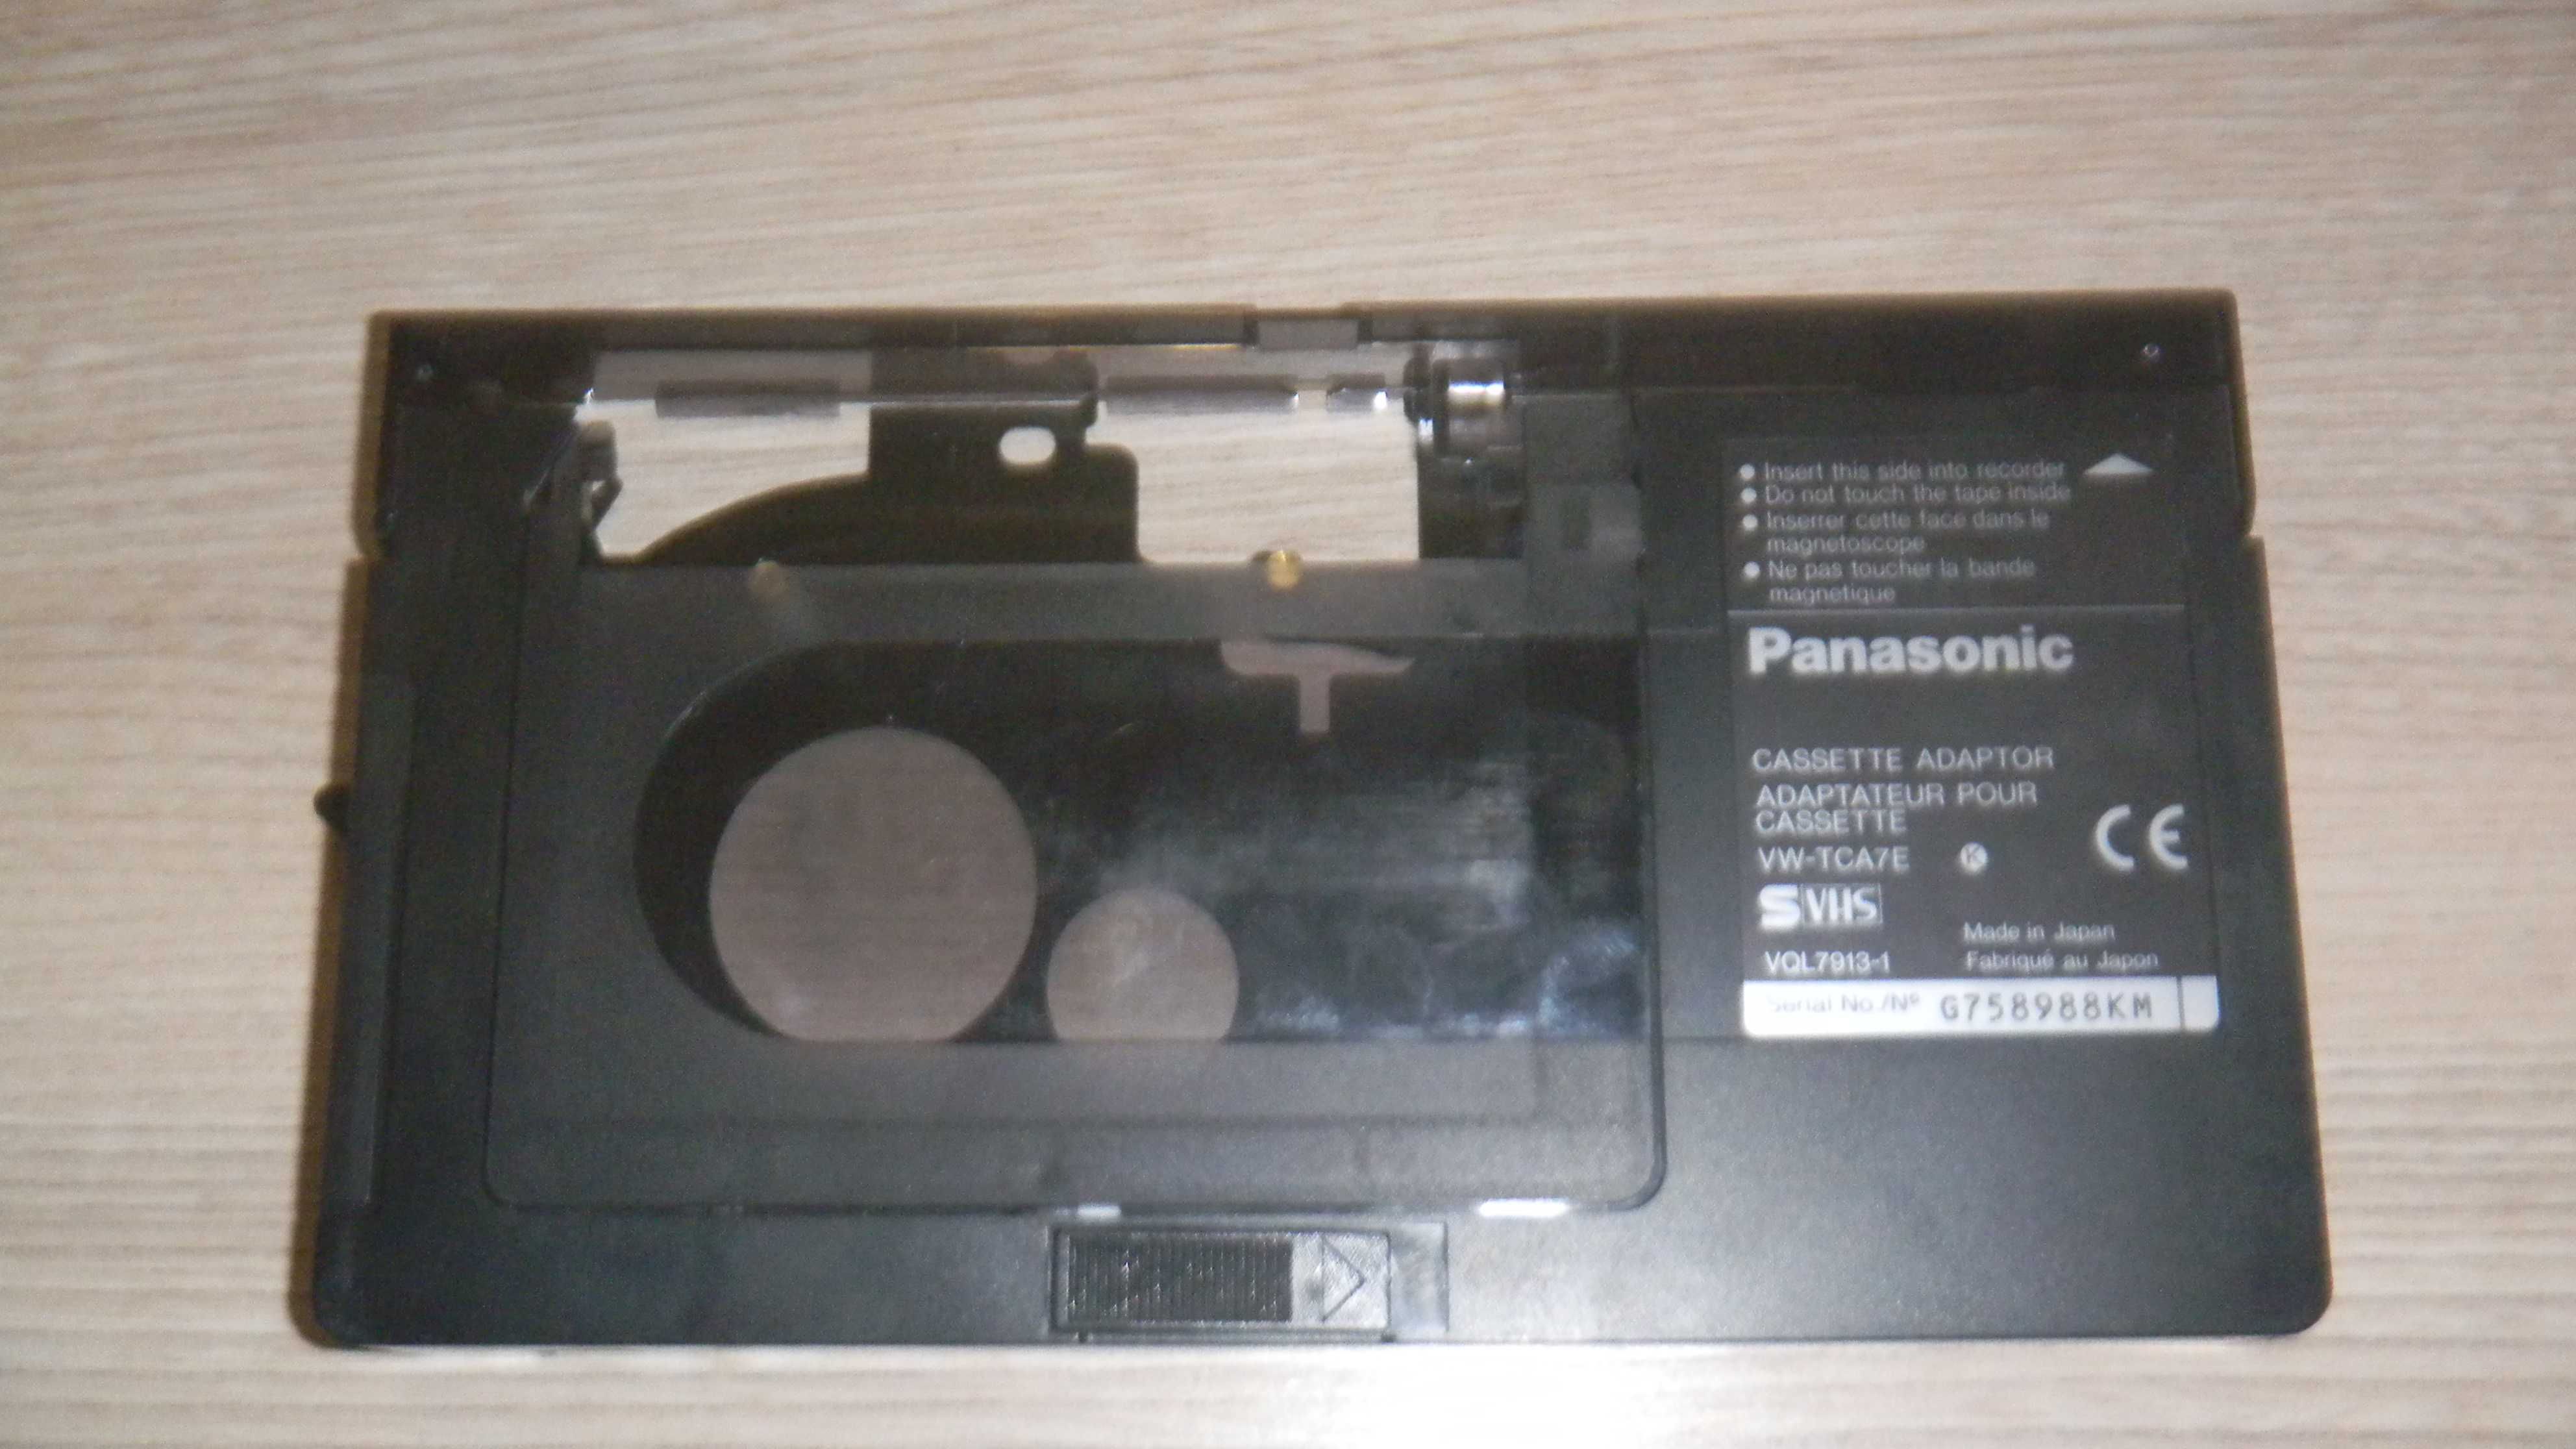 видеокассета-адаптер PANASONIC формата SVHS